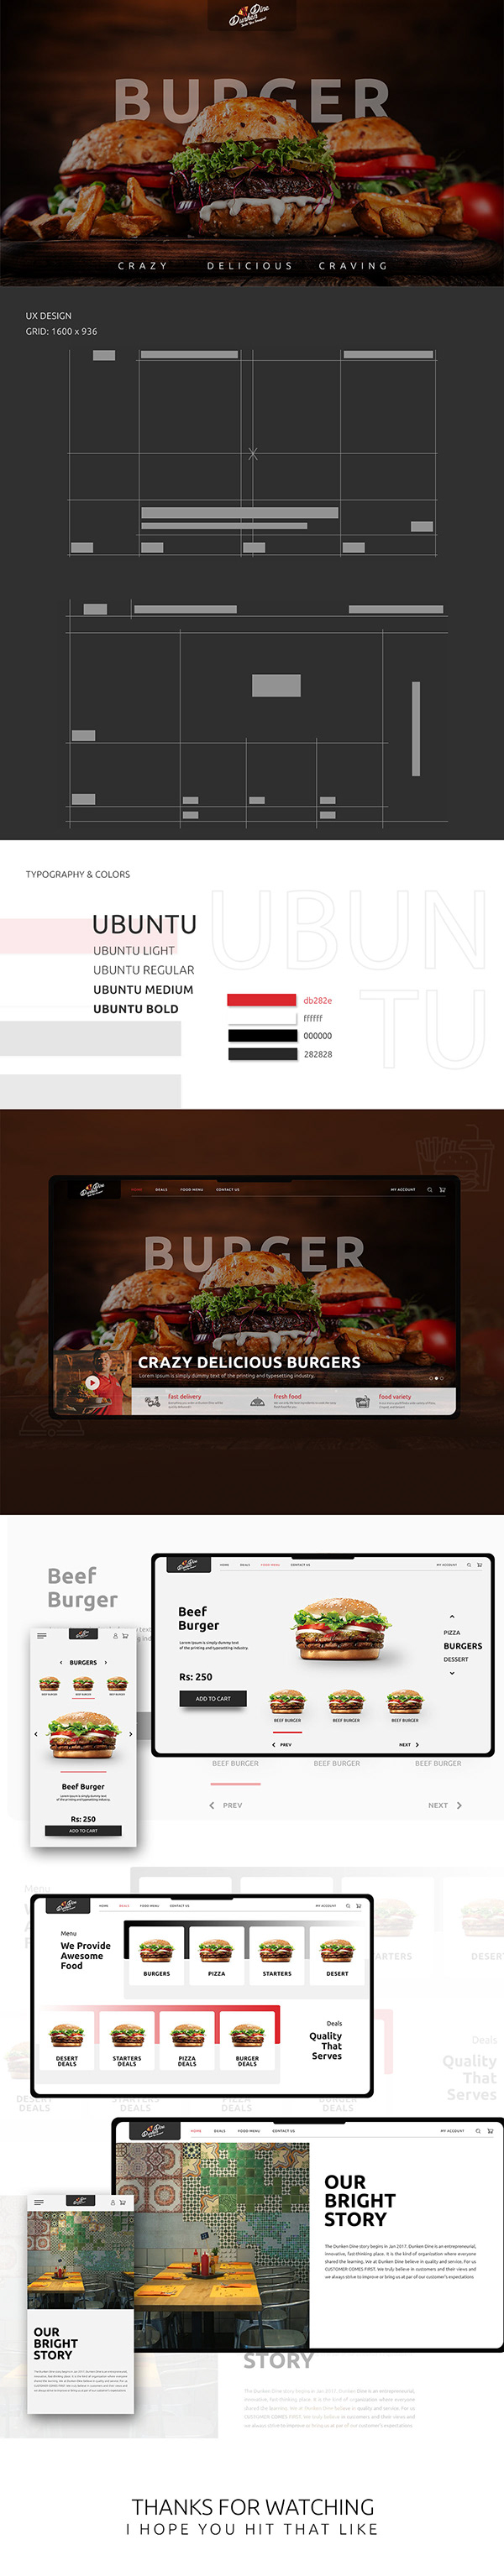 DunkenDine Restaurant Website UI/UX Design